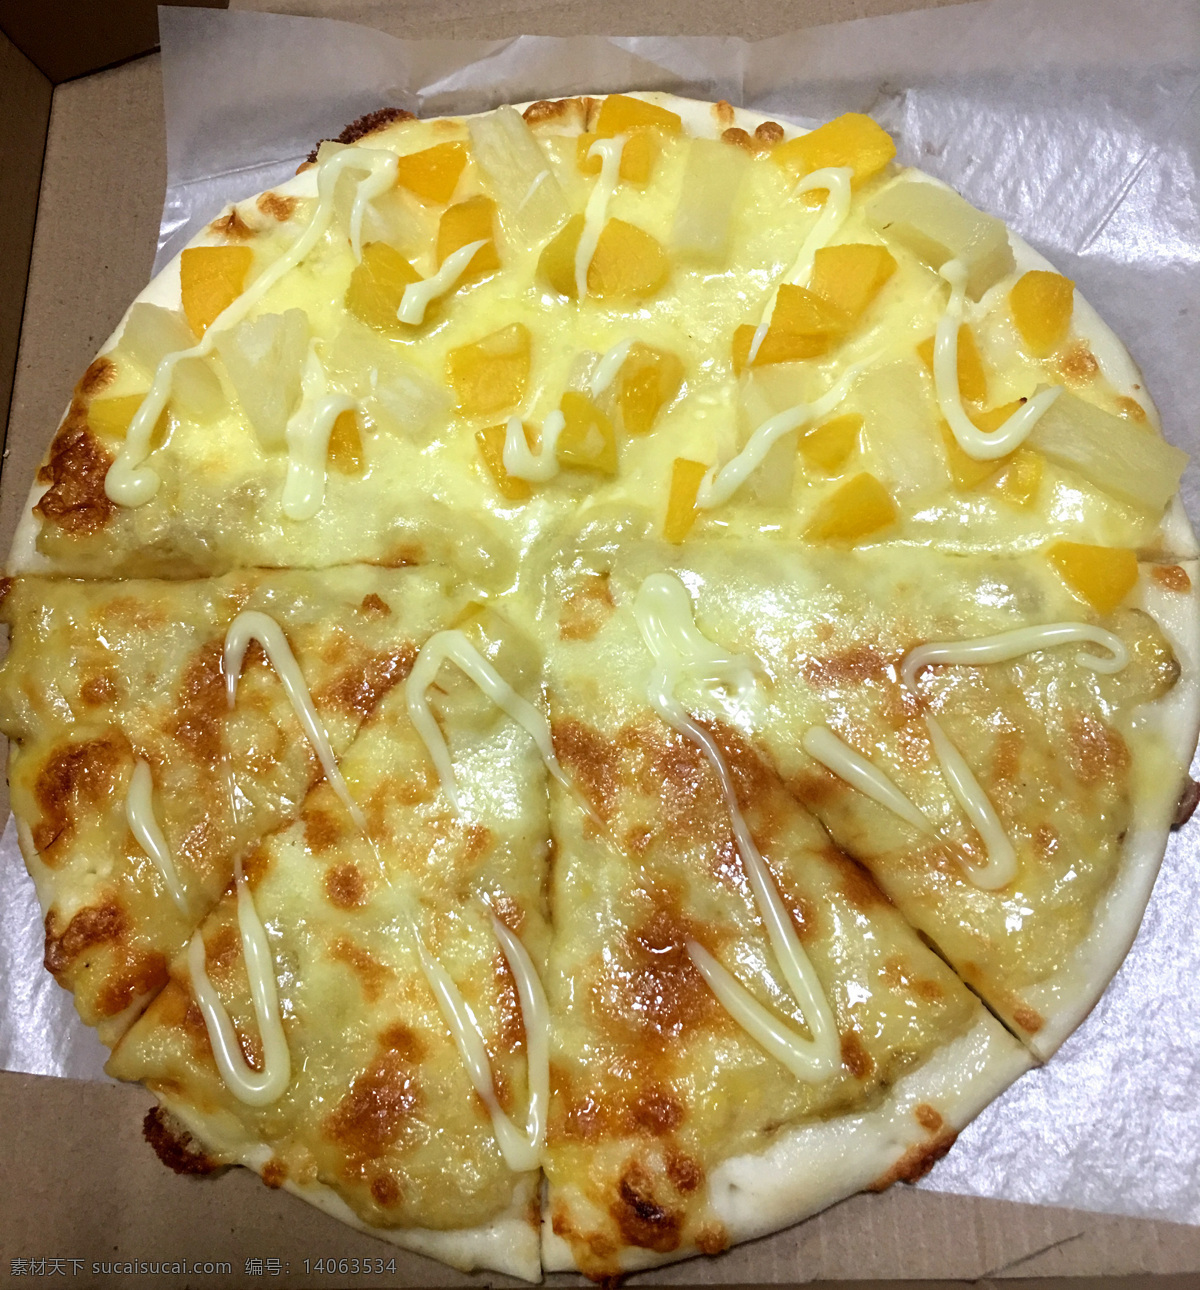 水果披萨 披萨 菠萝披萨 披萨双拼 薄饼披萨 餐饮美食 西餐美食